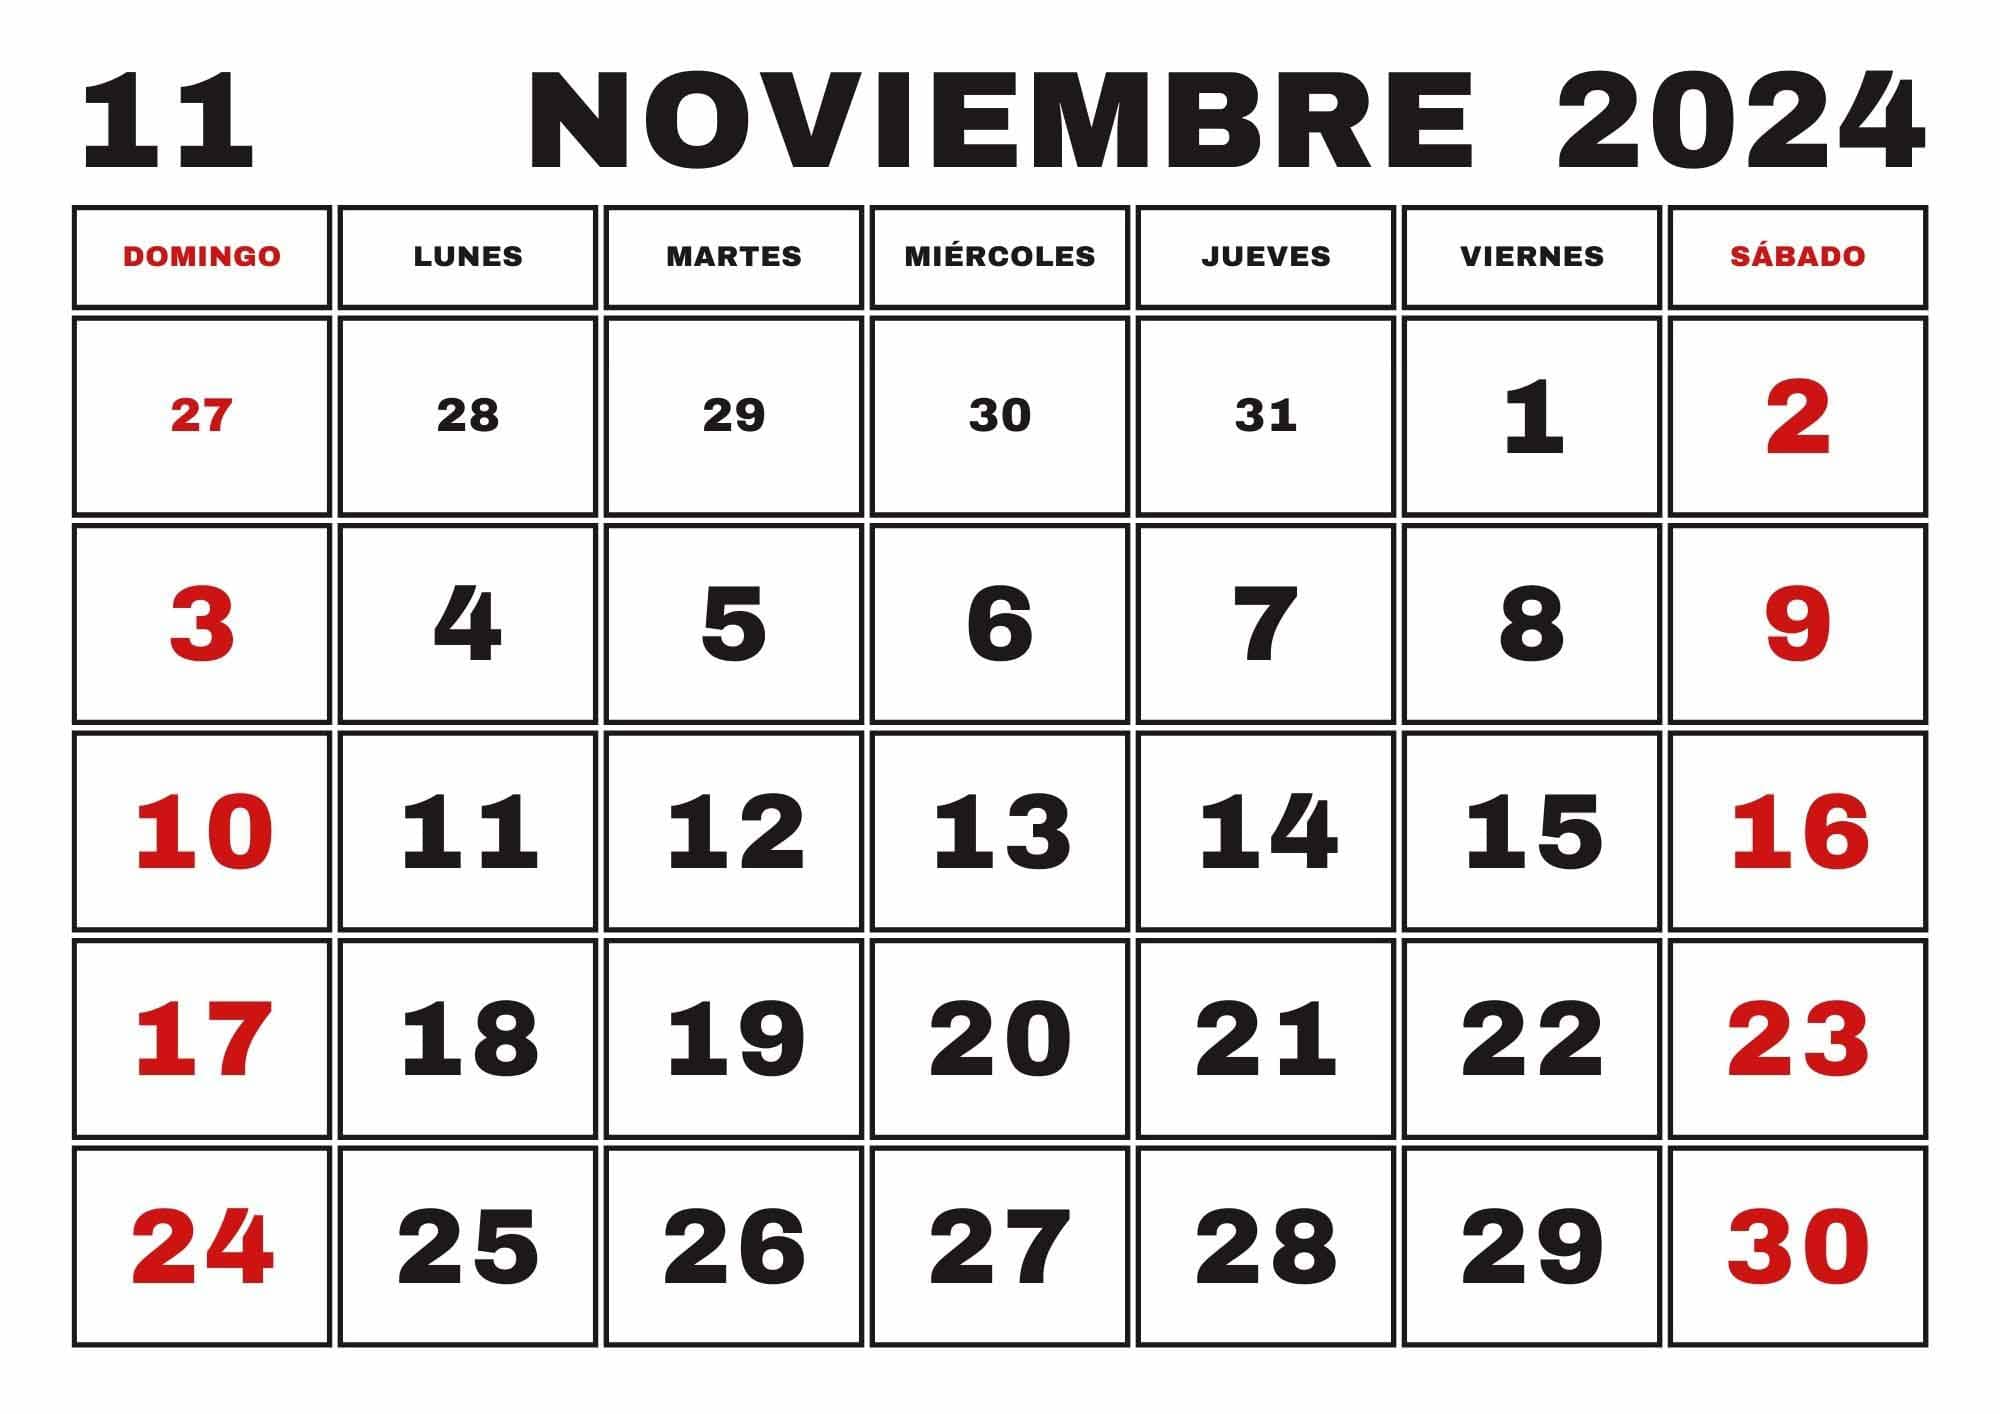 Calendario Noviembre 2024, Obtenga aquí el Calendario Noviembre 2024